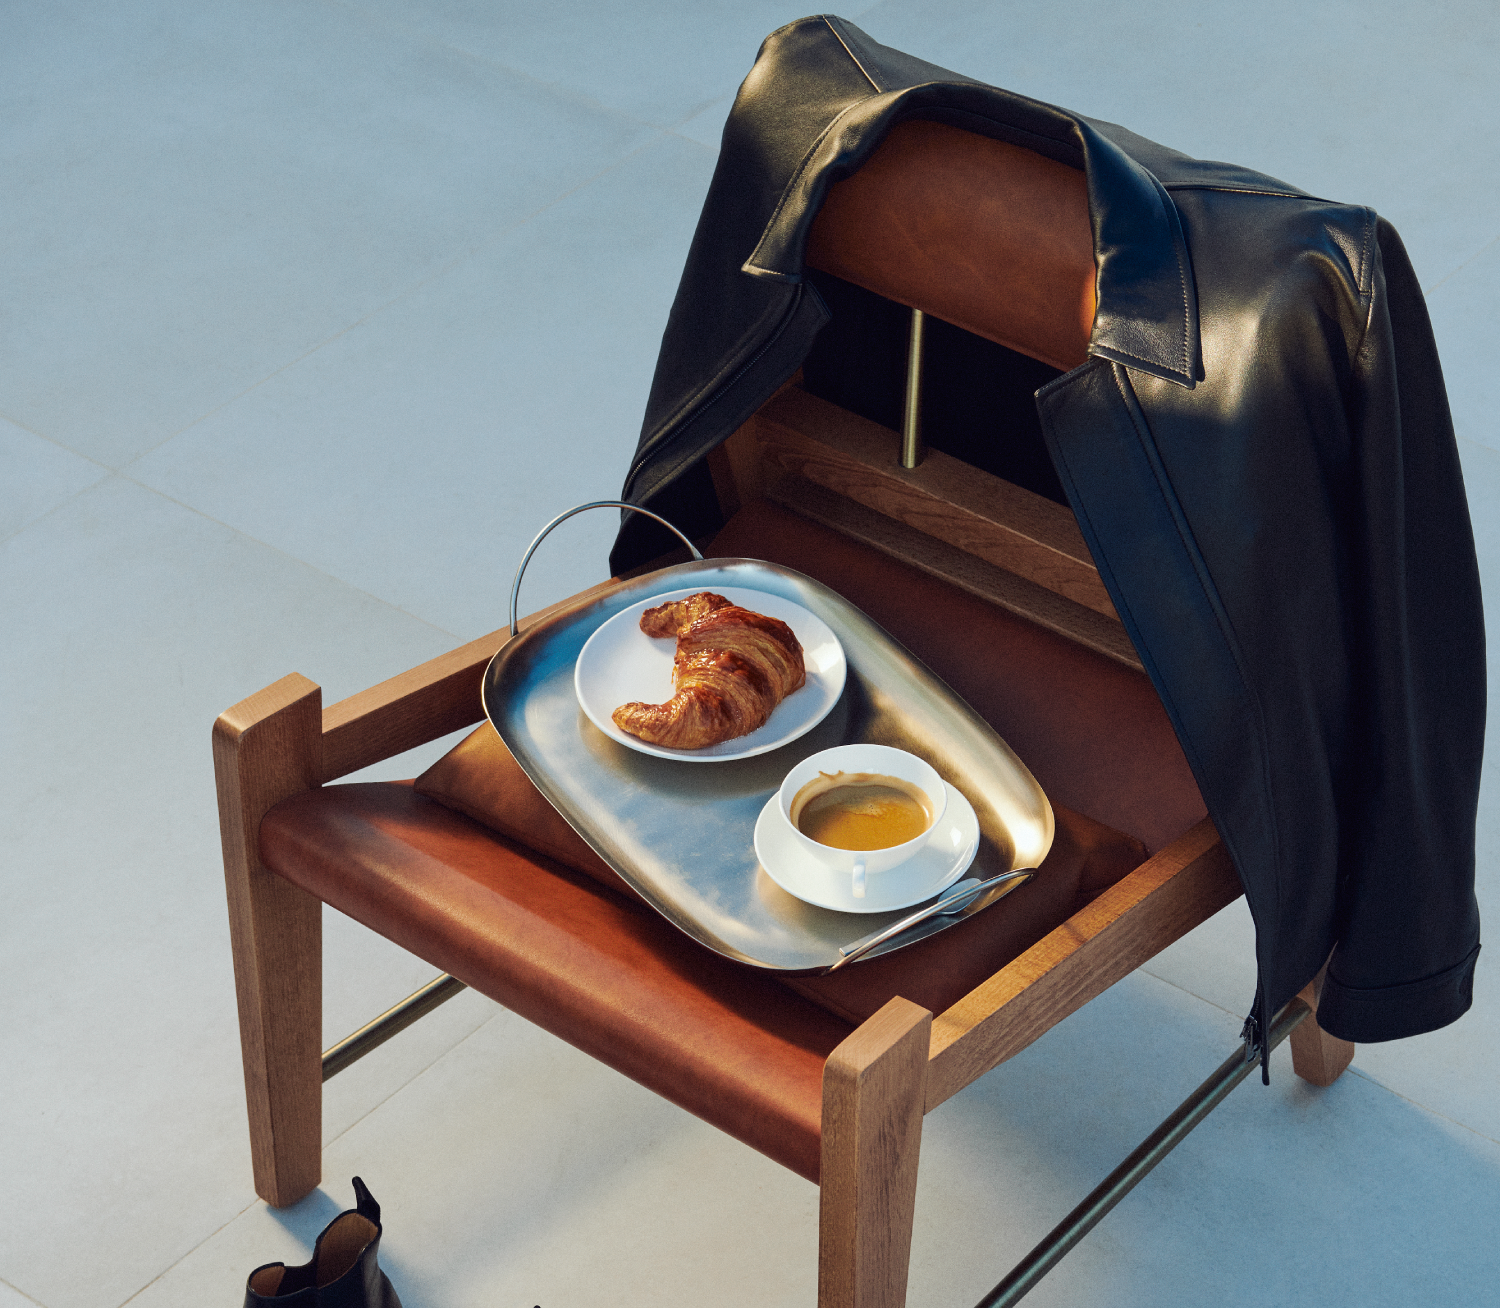 椅子上放着一盘早餐食物和饮料 